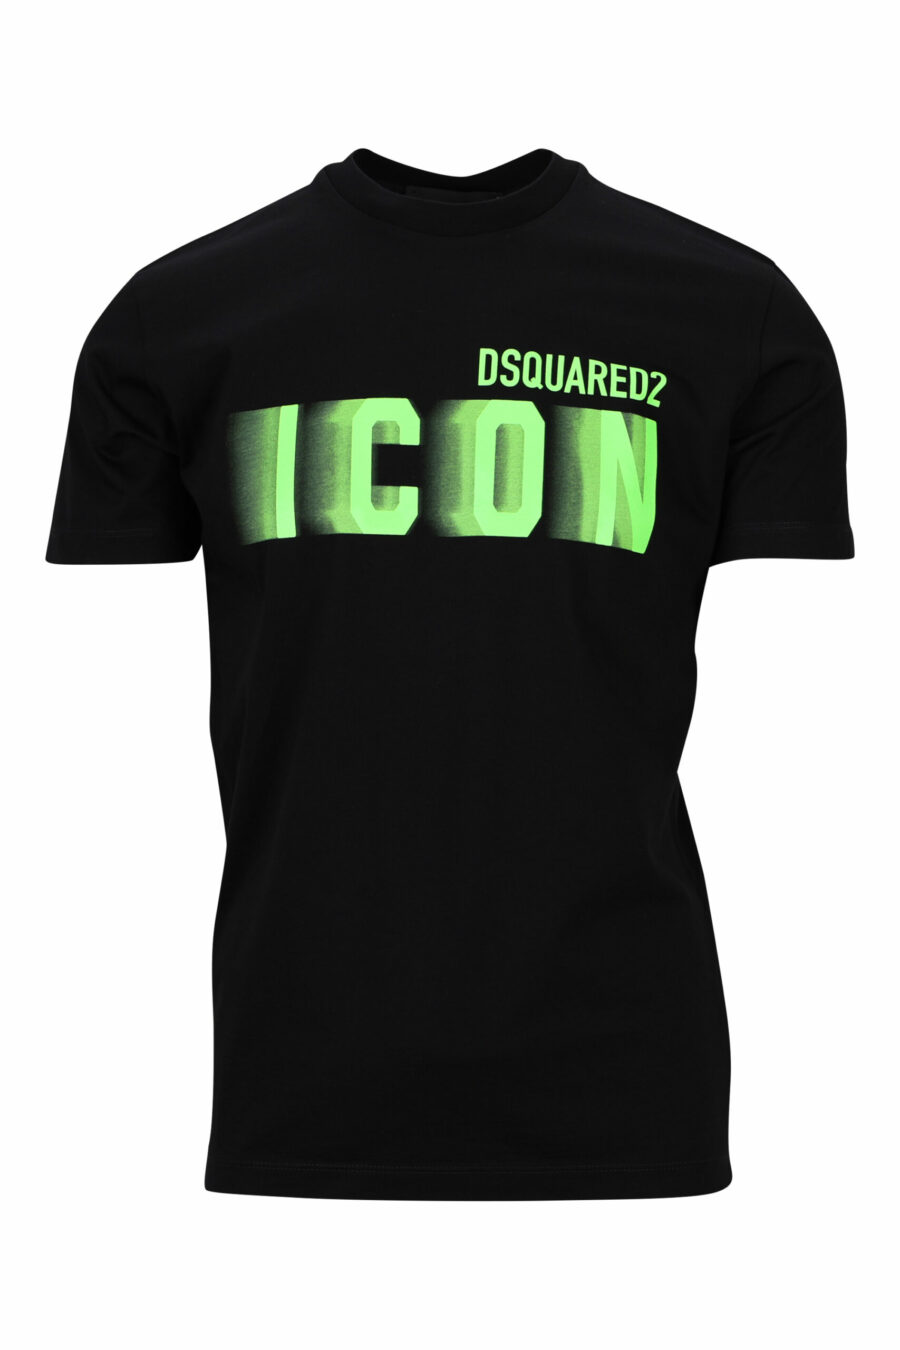 T-shirt preta com maxilogo "ícone" verde néon esbatido - 8054148359126 à escala